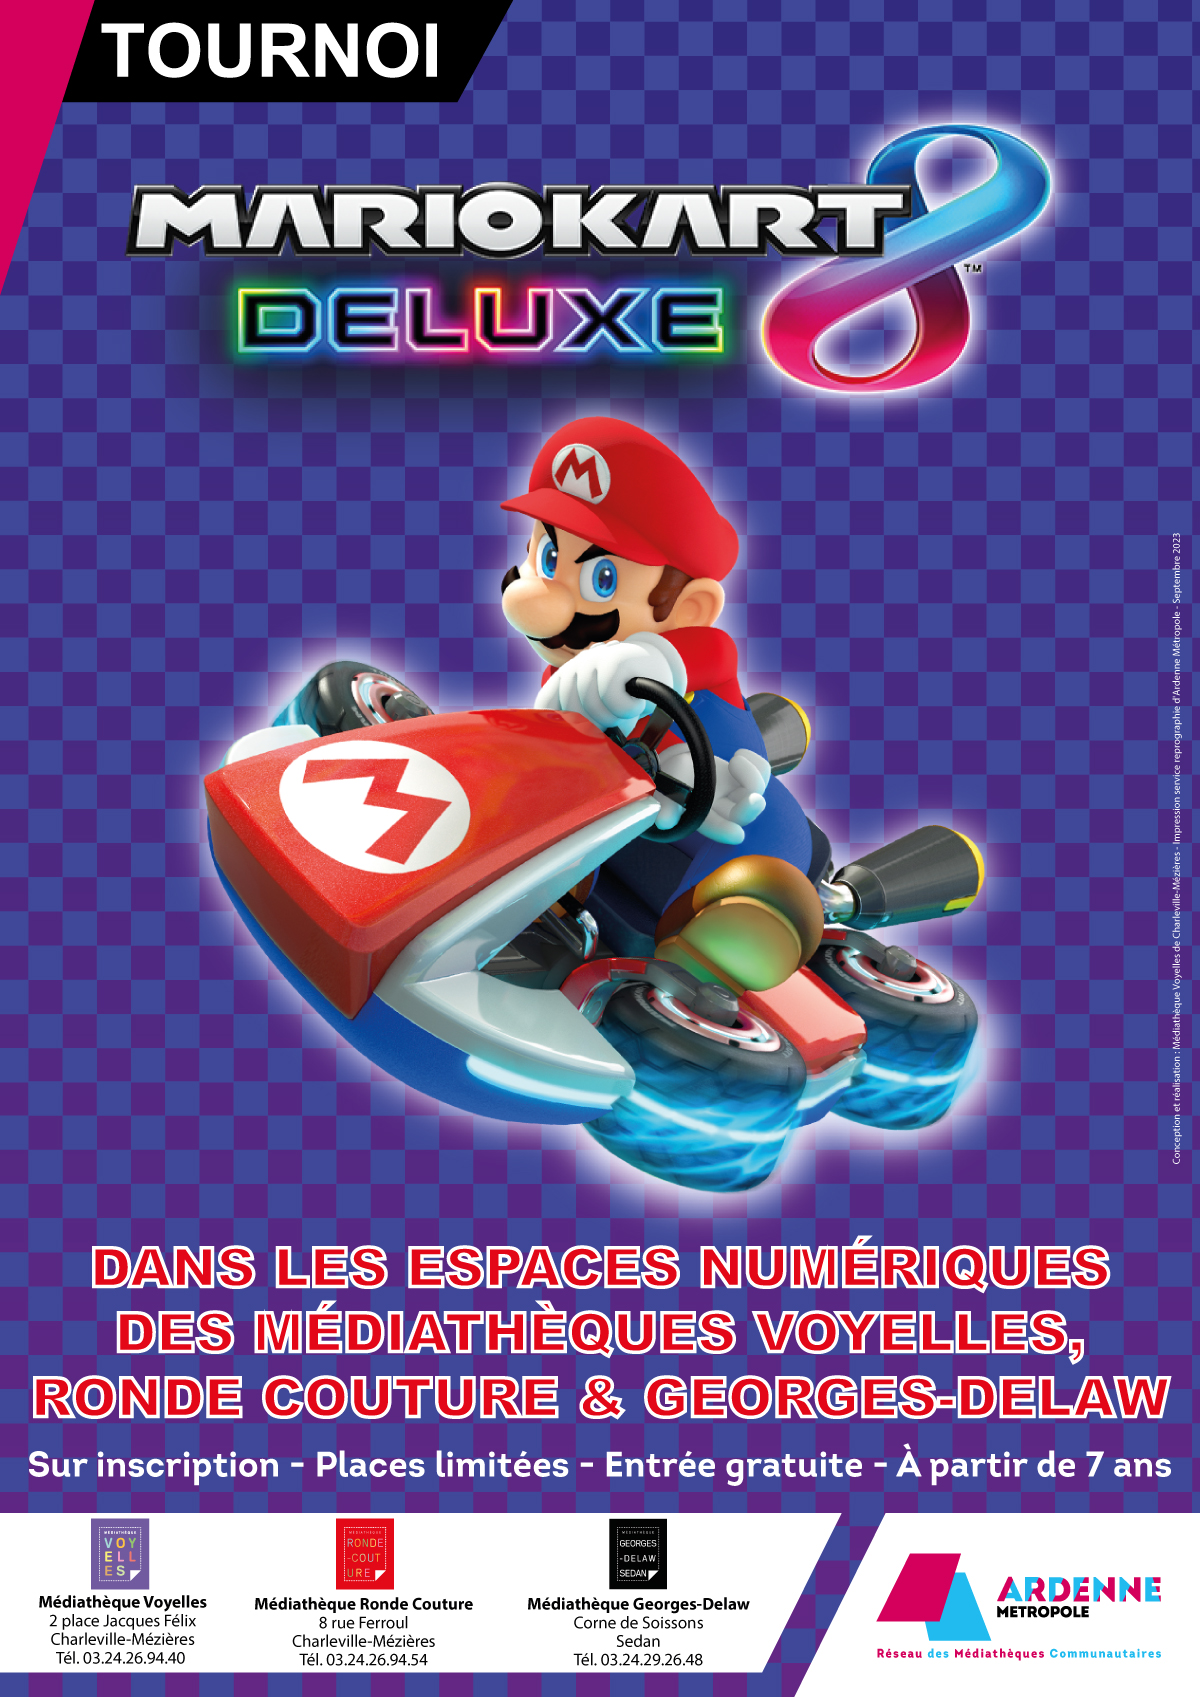 Tournois Mario Kart all